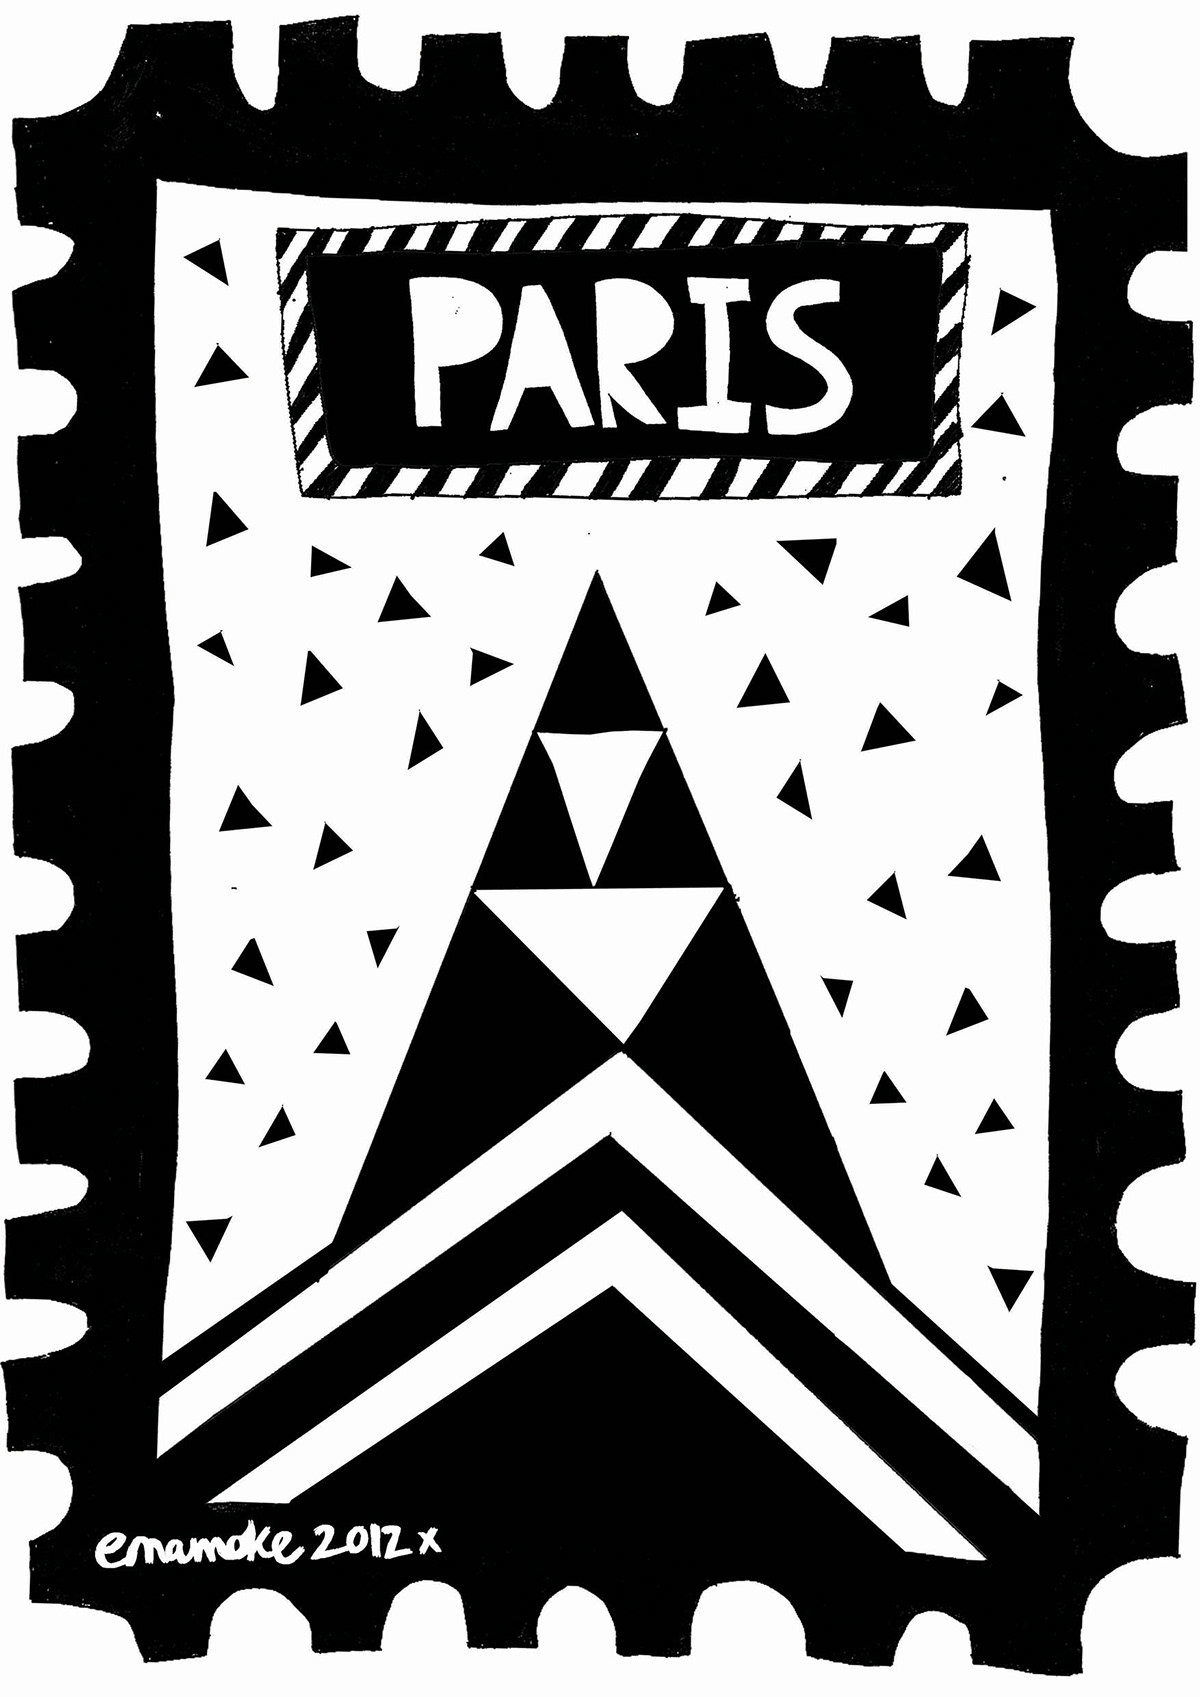 Paris Afropolitans